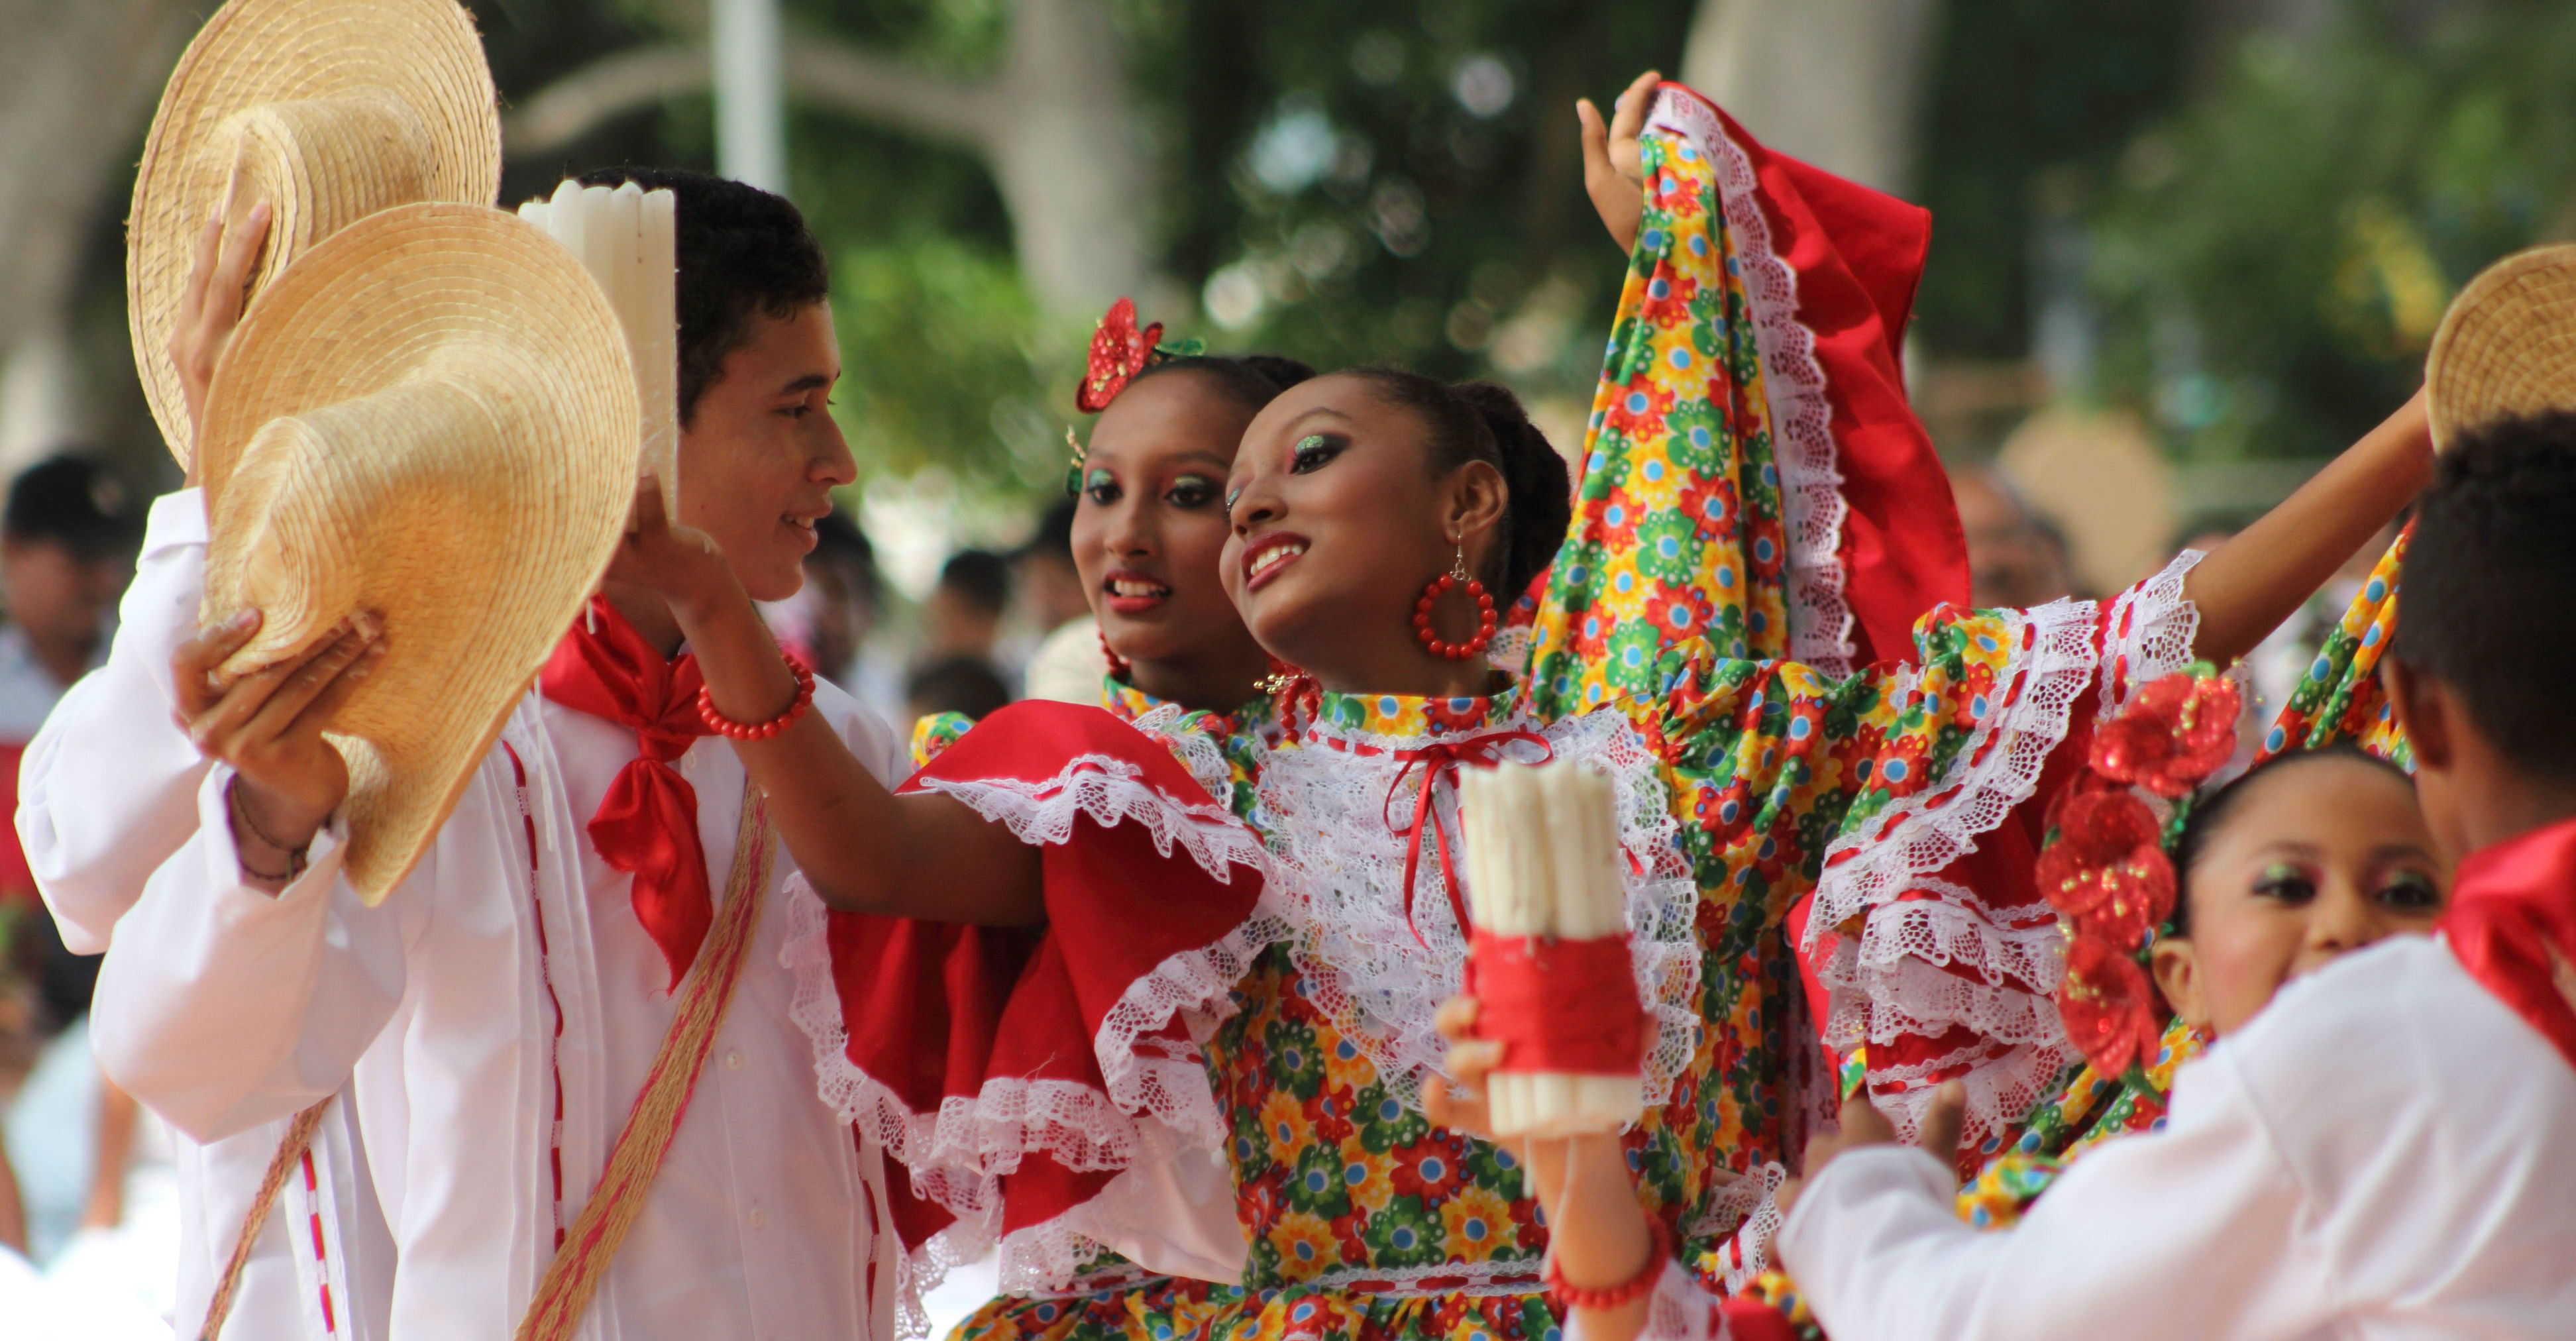 Lo grupos folclóricos también estuvieron presentes en caravana d ‘Festival está en la calle’.